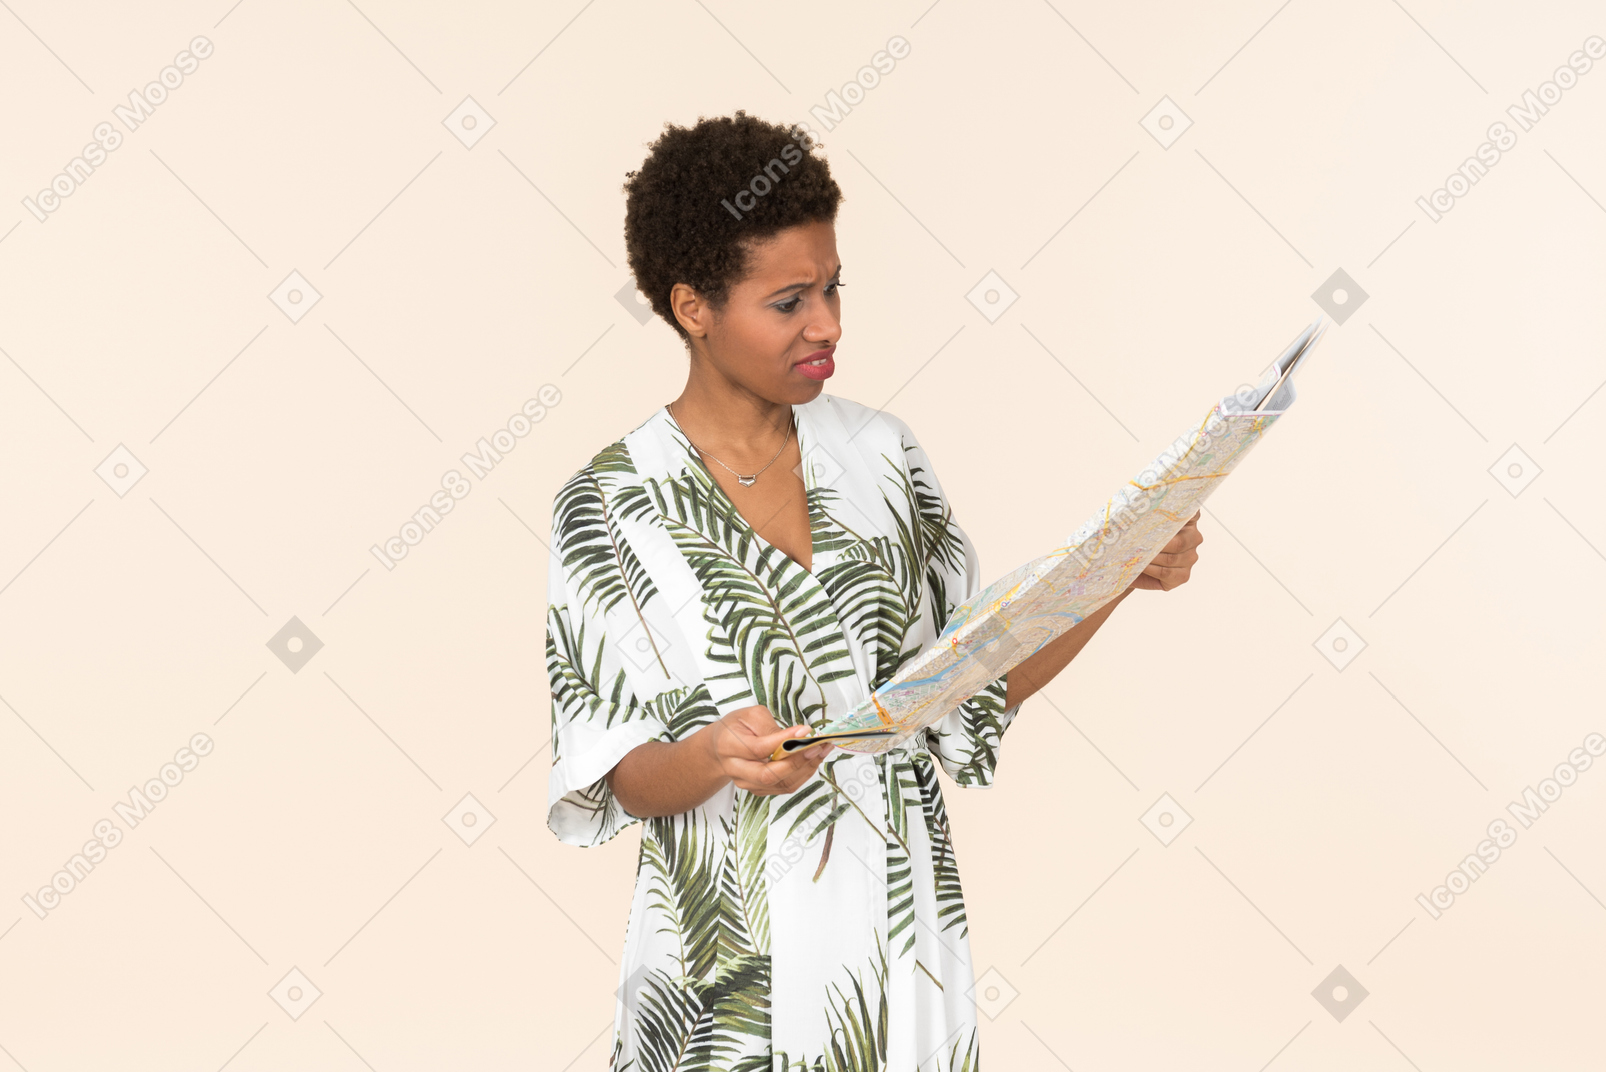 Mujer negra de pelo corto con un vestido blanco y verde, de pie con un mapa en las manos